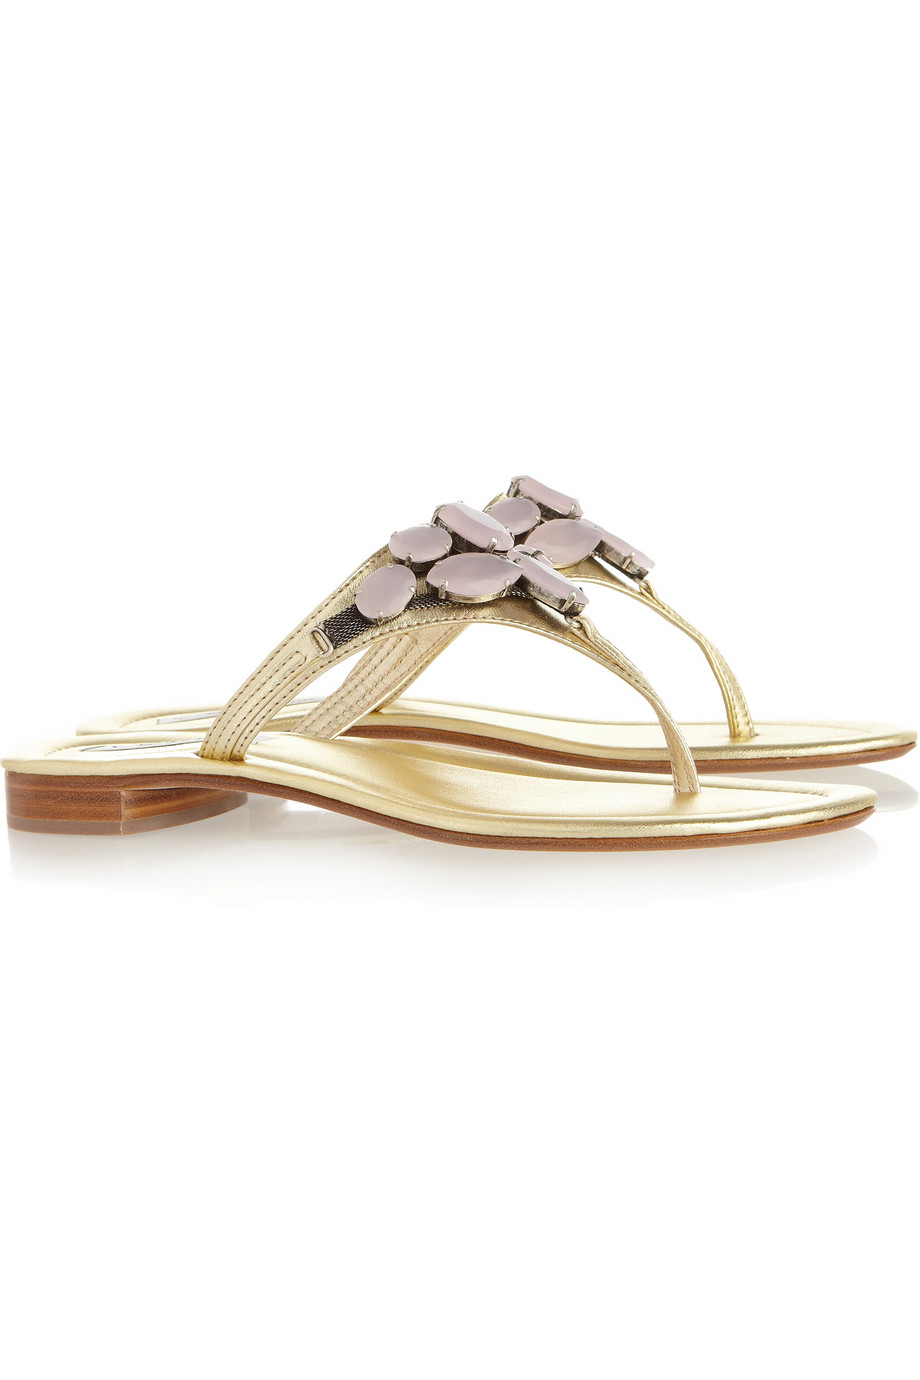 Lyst - Oscar de la renta Joanne Embellished Metallic Leather Sandals in ...